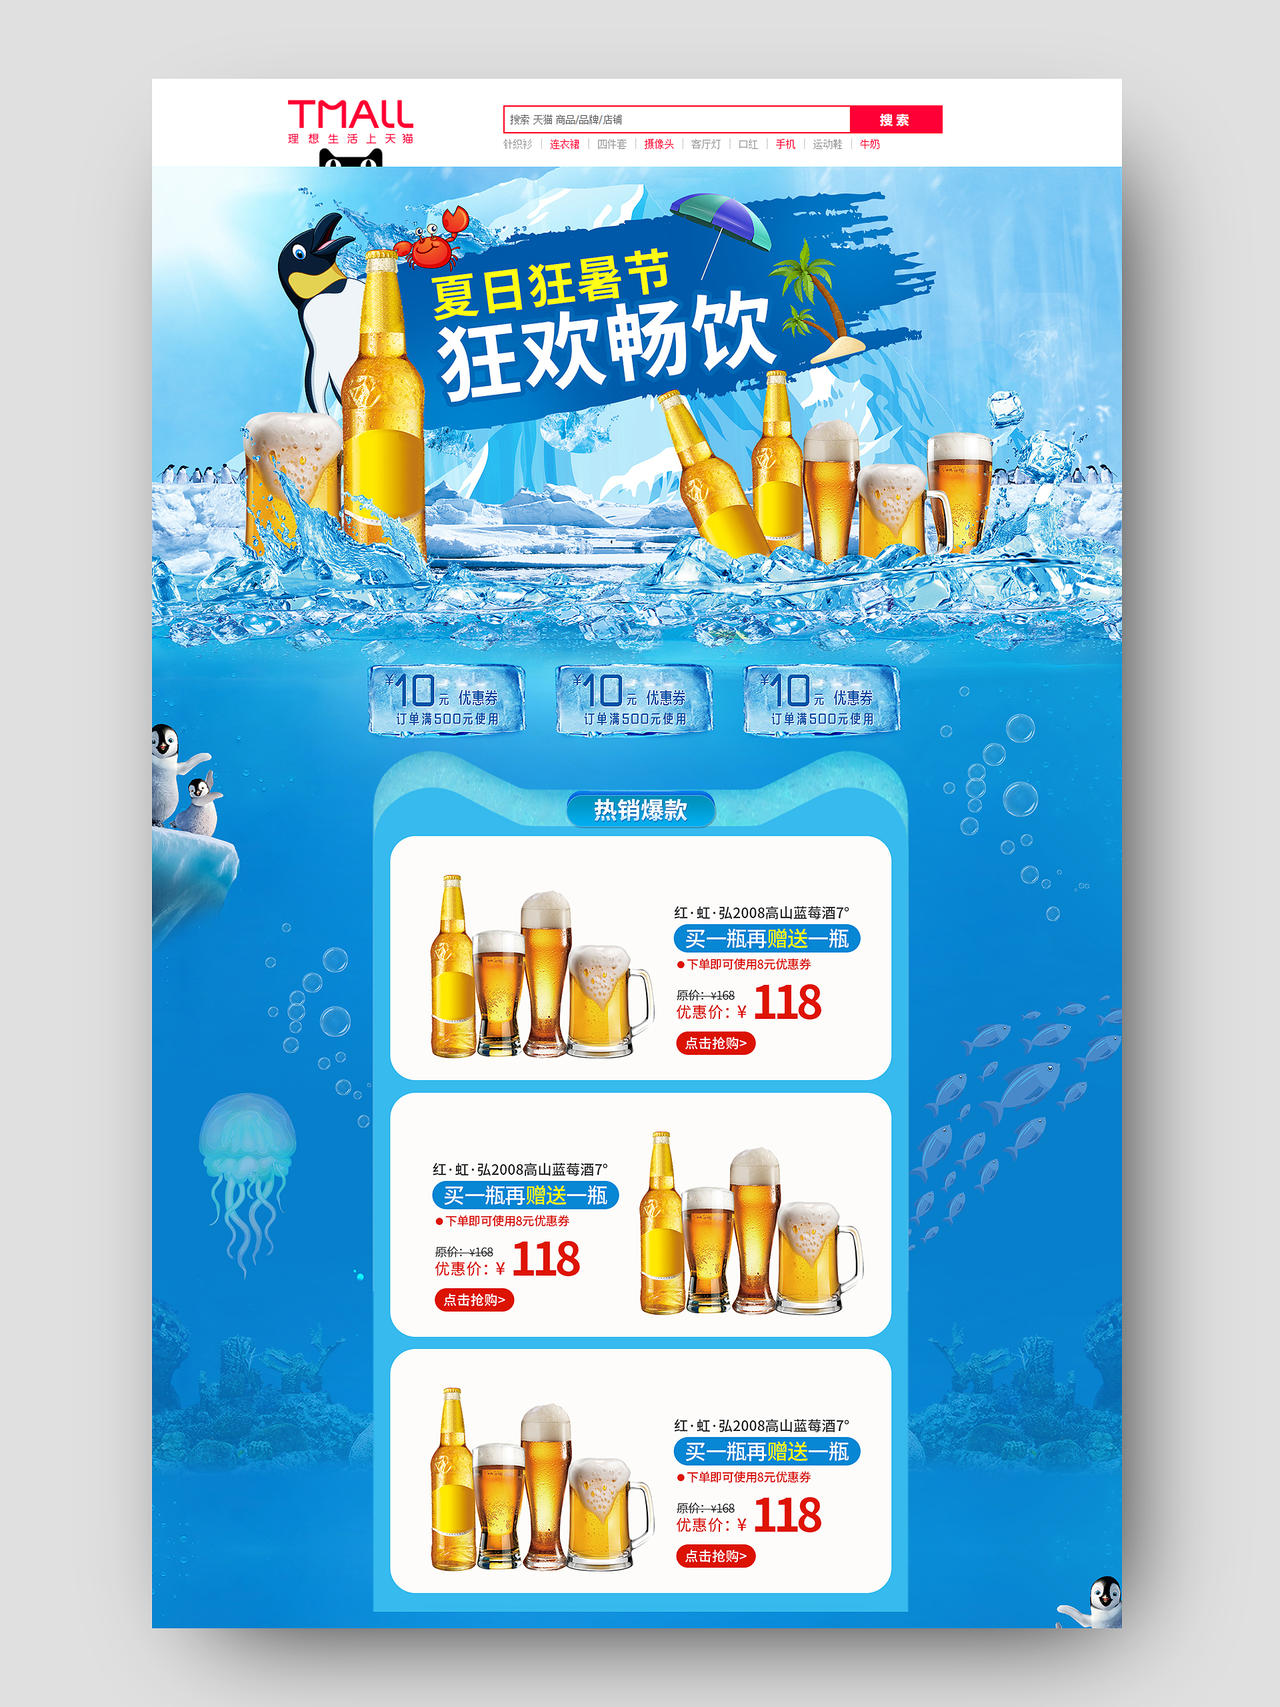 蓝色手绘简约天猫啤酒节狂欢畅饮活动促销电商首页天猫啤酒节首页